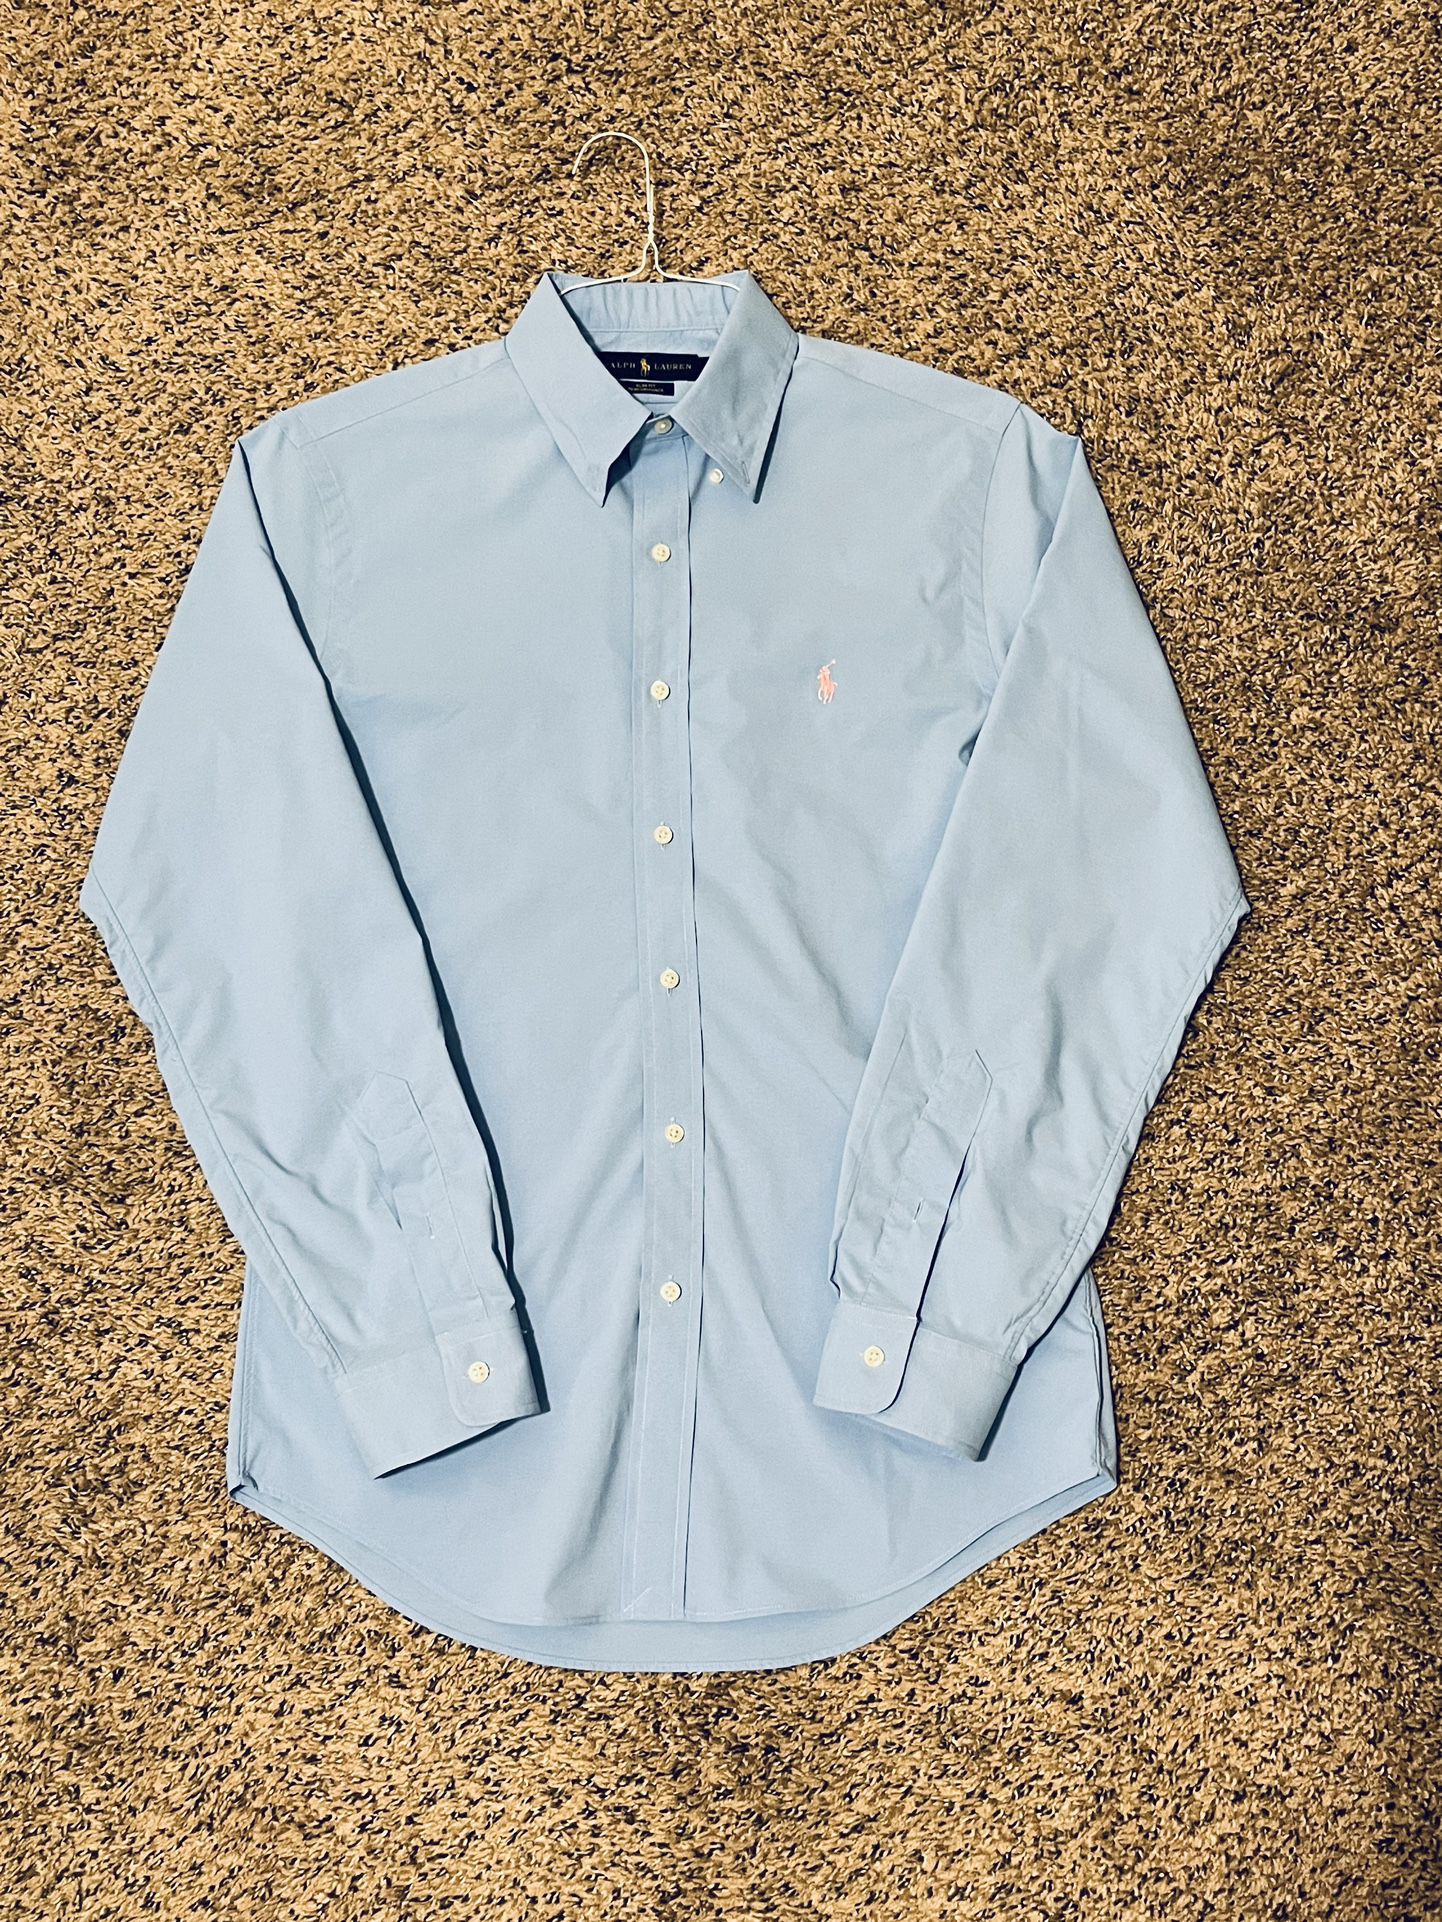 Mens Polo Ralph Lauren Button Up Slim Fit Shirt Size Medium Light Blue